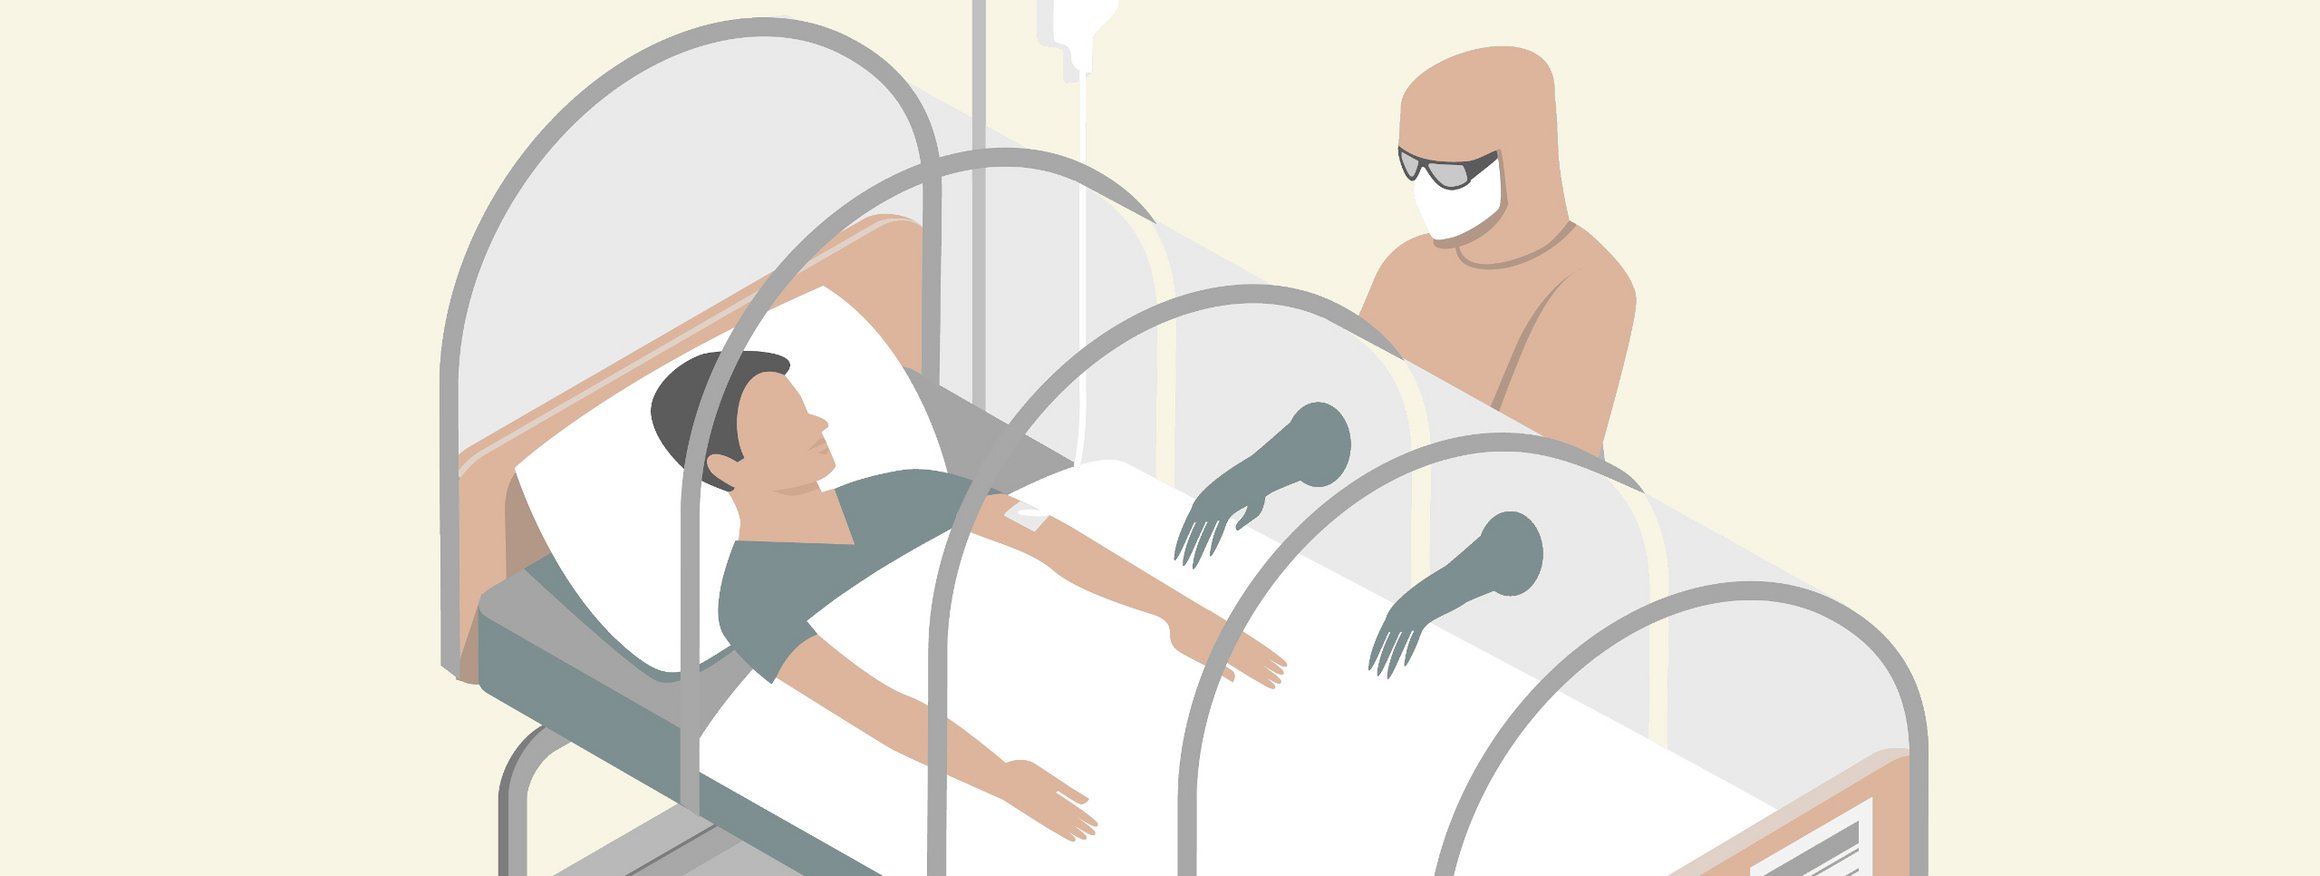 Die Illustration zeigt einen Patienten, der isoliert ist und behandelt wird.